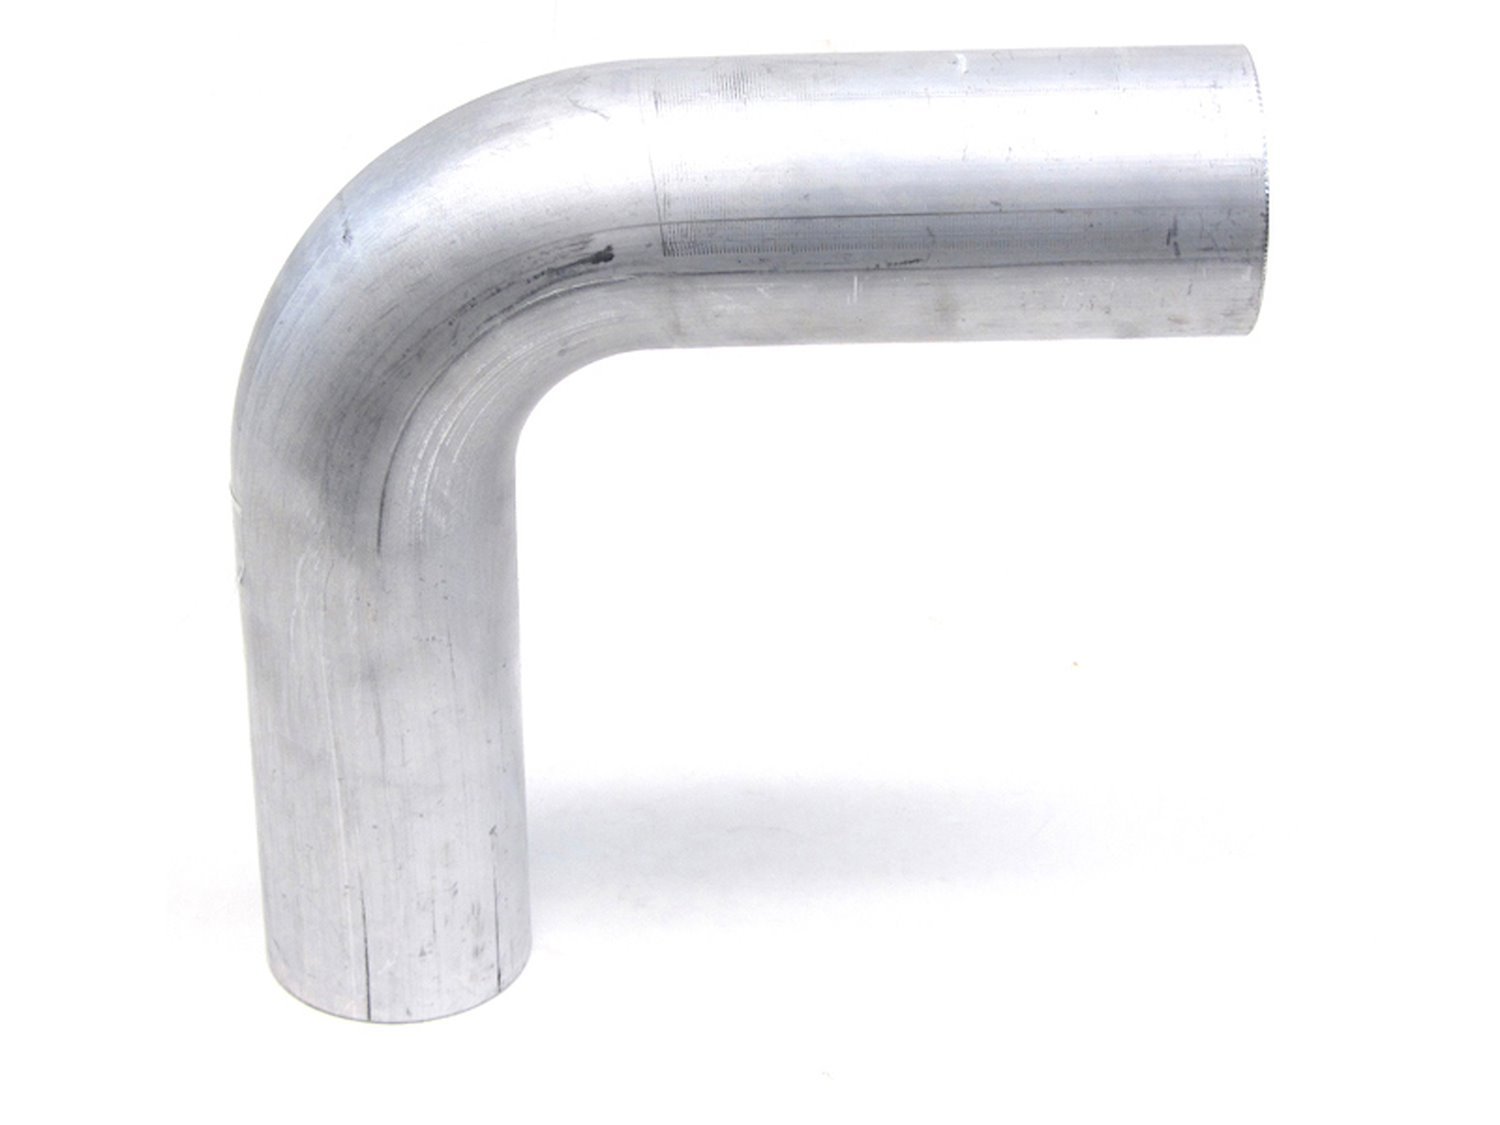 AT90-100-CLR-3 Aluminum Elbow Tube, 6061 Aluminum, 90-Degree Bend Elbow Tubing, 1 in. OD, Tight Radius, 3 in. CLR